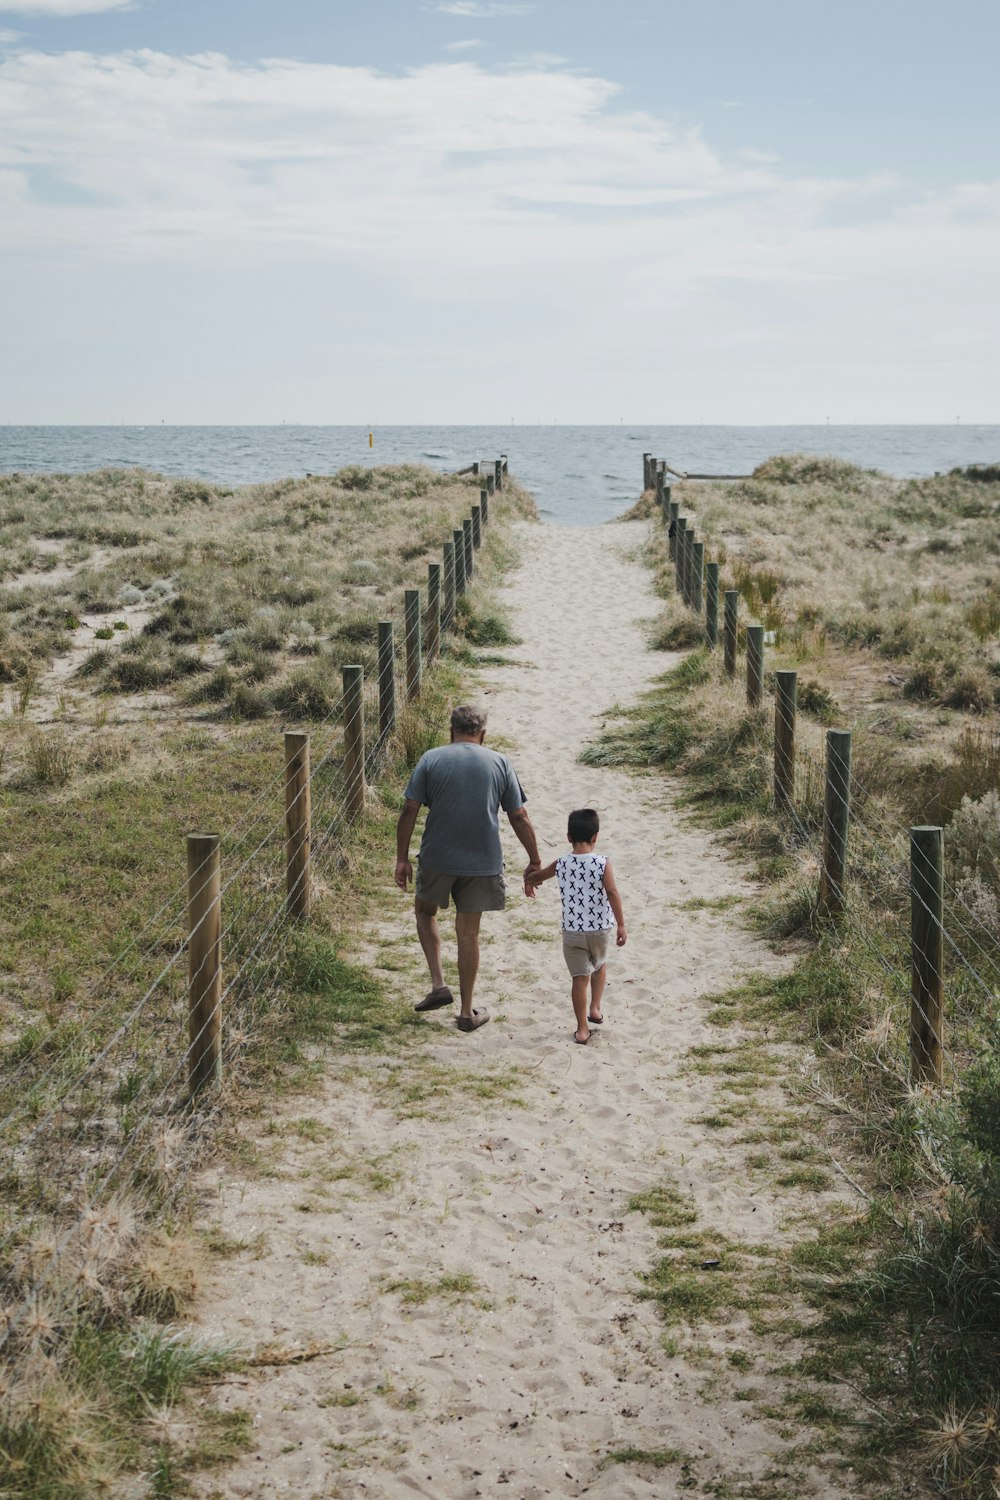 해변으로 향하는 통로를 가로질러 걷고 있는 남자와 소년